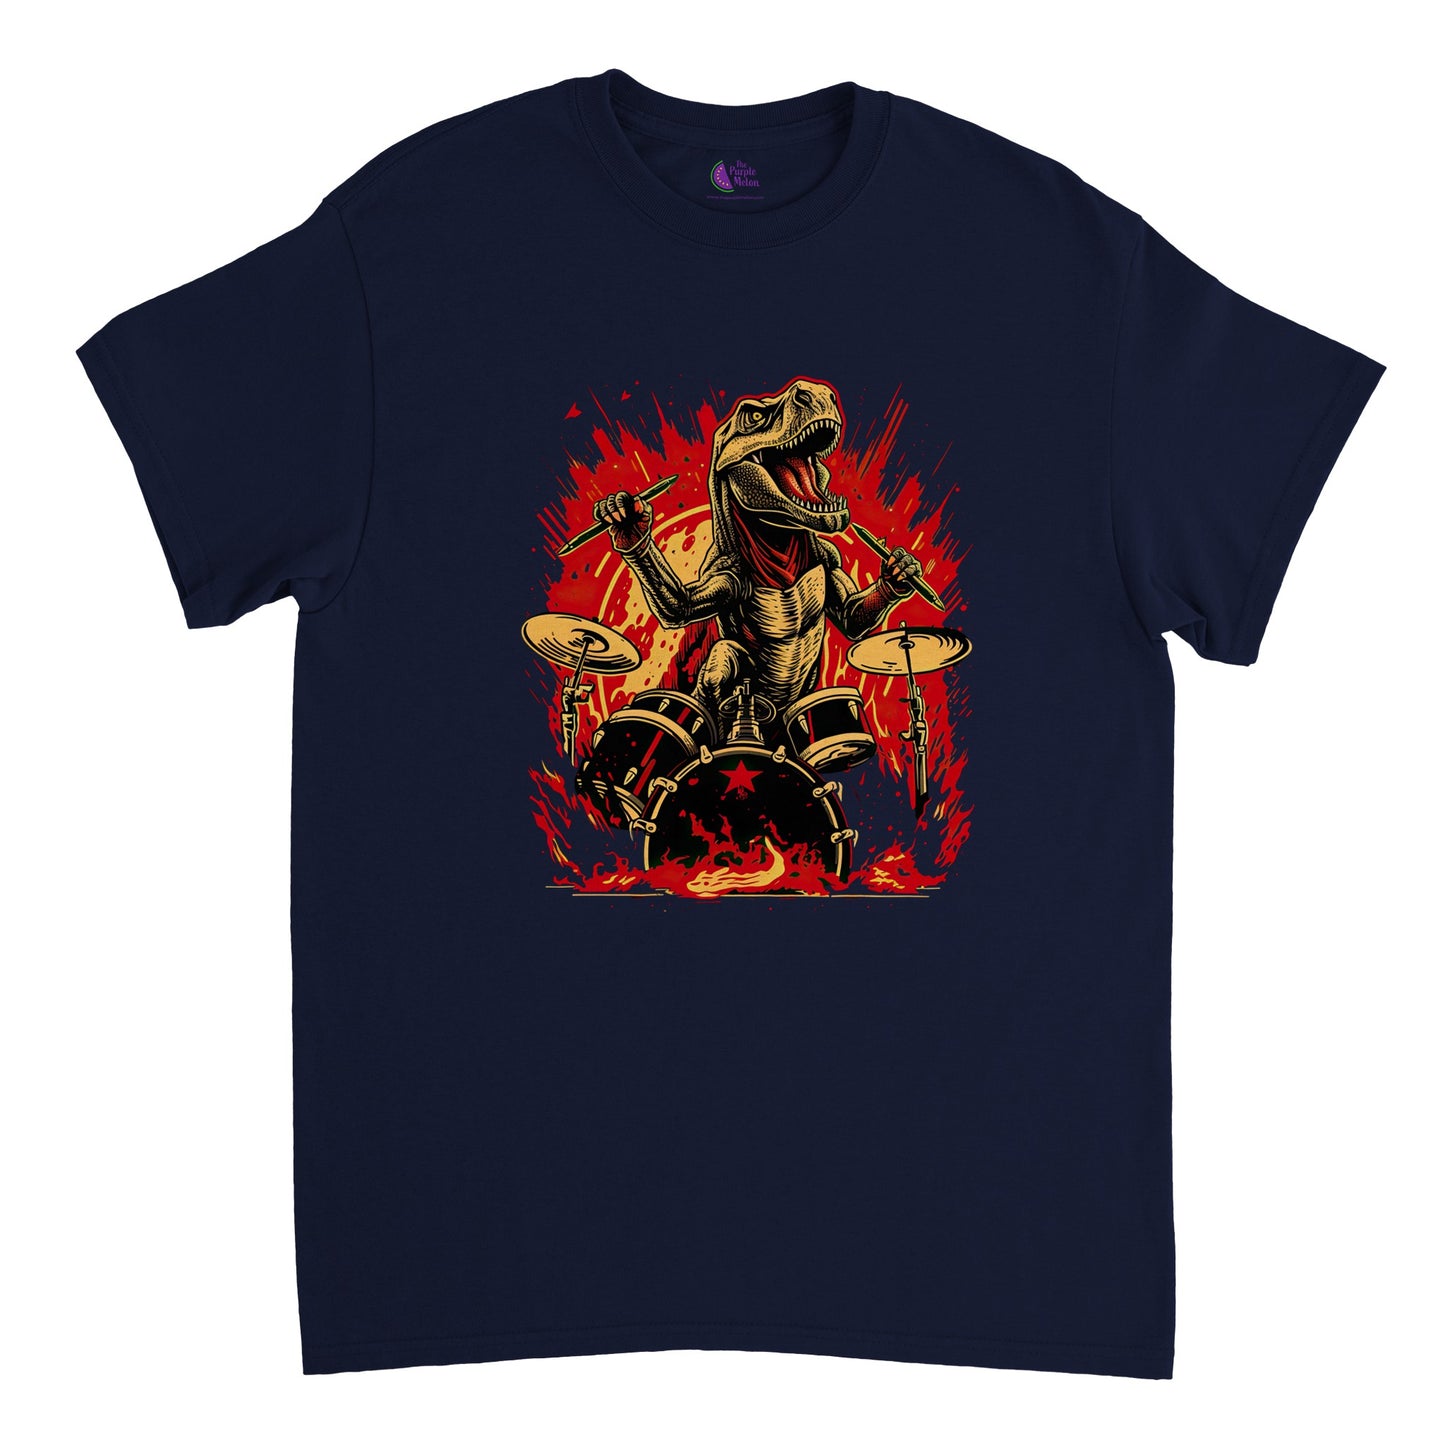 Navy blue t-shirt with t-rex drummer print